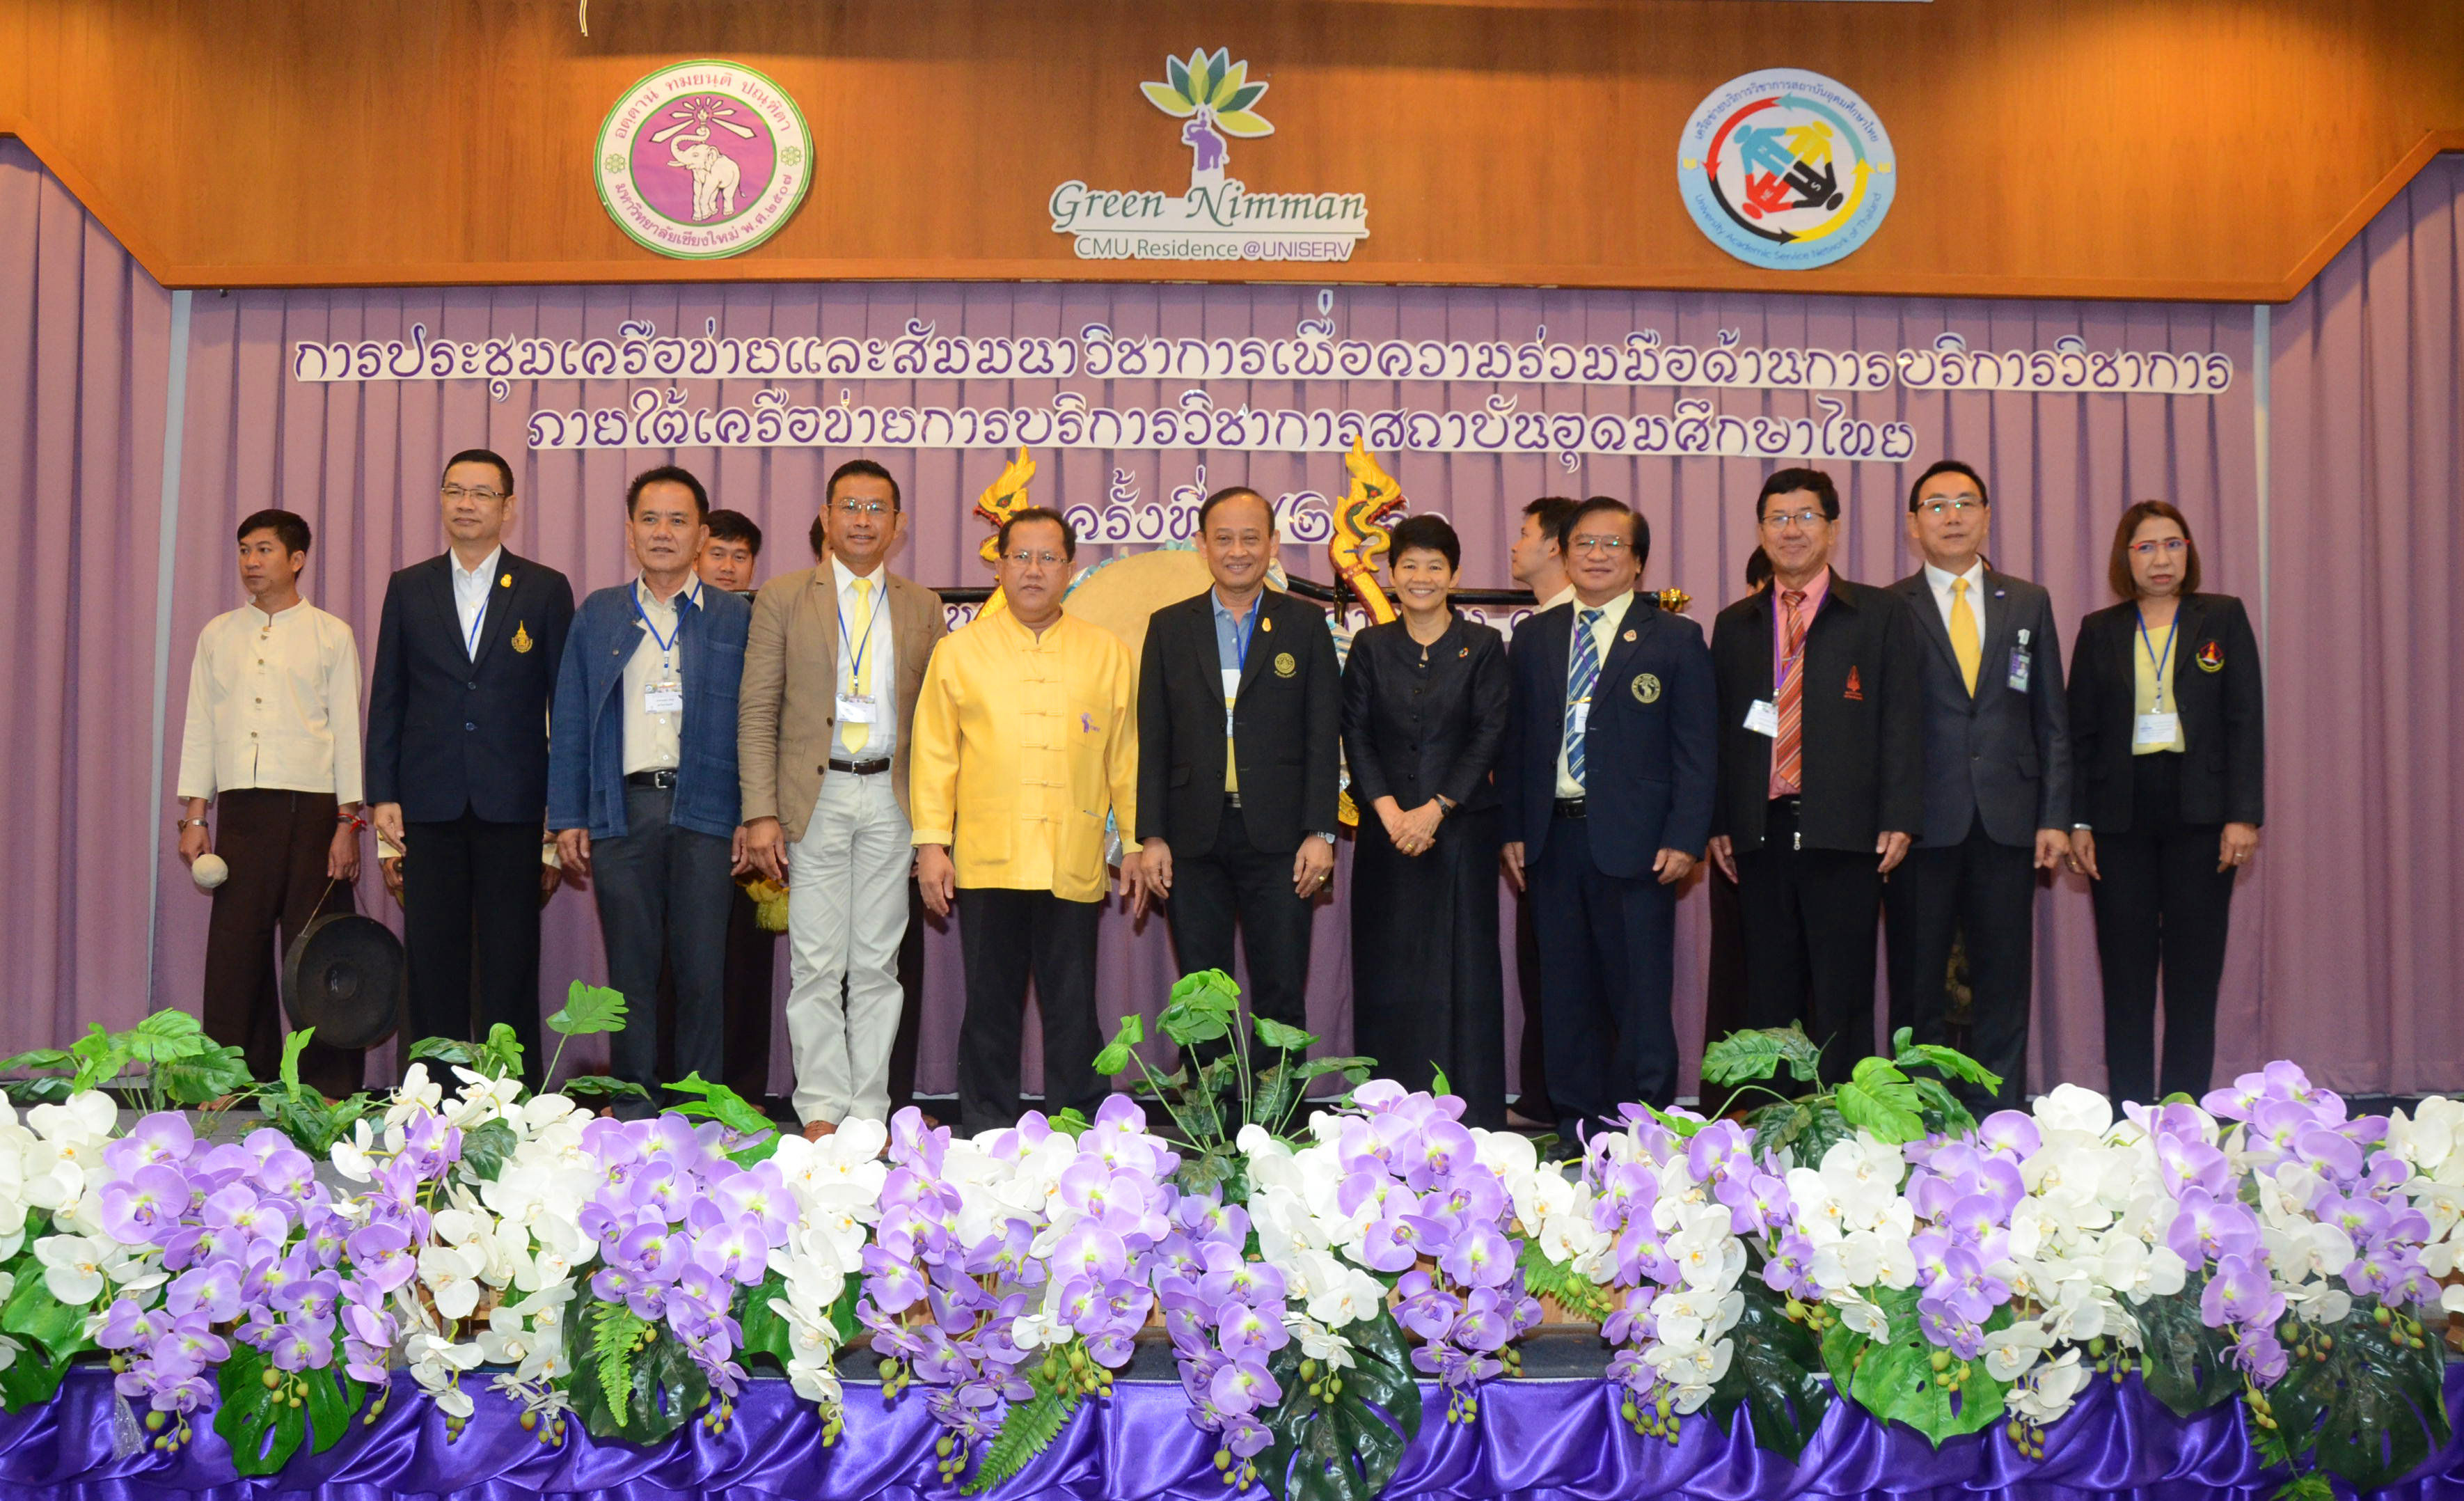 ประชุมเครือข่ายและสัมมนาวิชาการเพื่อความร่วมมือด้านการบริการวิชาการภายใต้เครือข่ายบริการวิชาการ สถาบันอุดมศึกษาไทย ครั้งที่ 2 ประจำปี พ.ศ. 2561